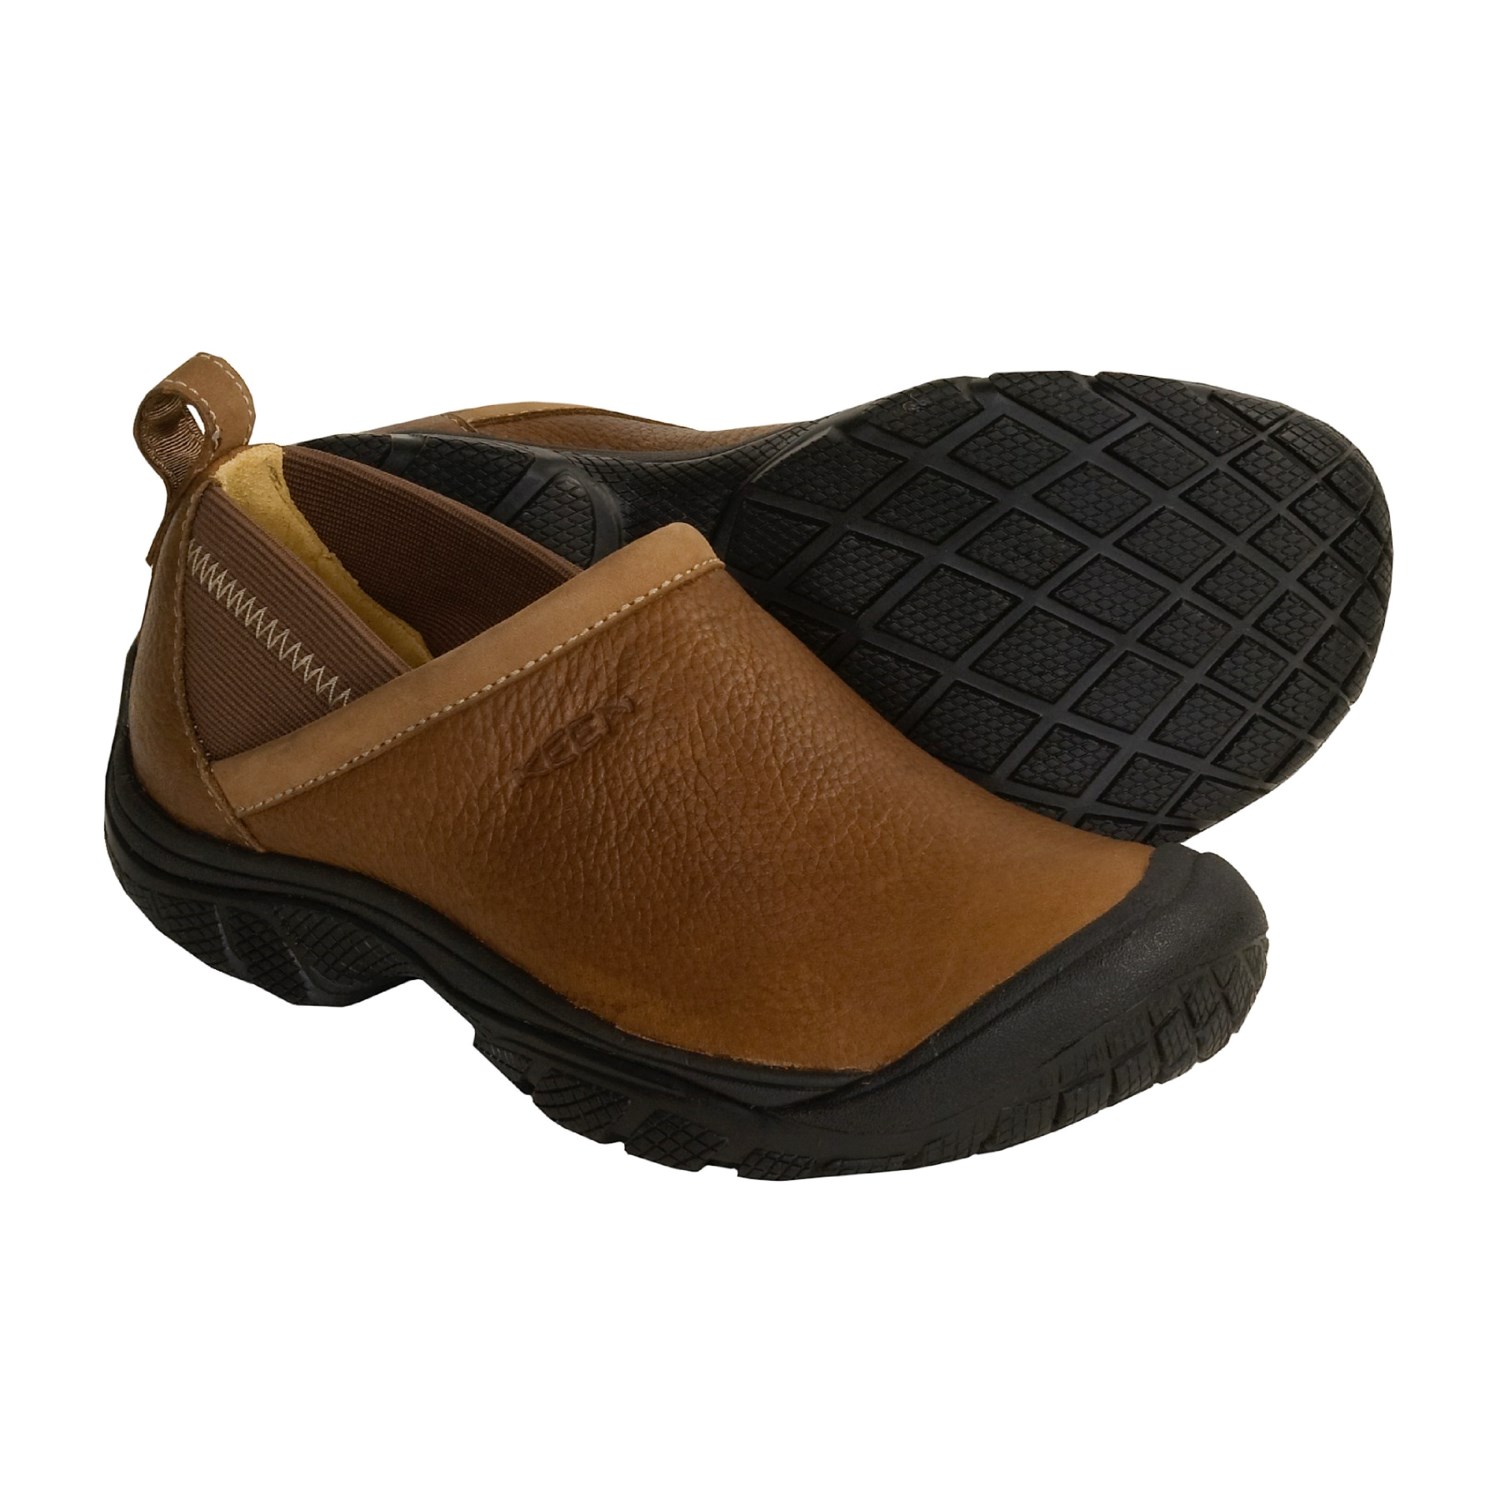 Keen Bandon Shoes (For Men) 2075V - Save 38%